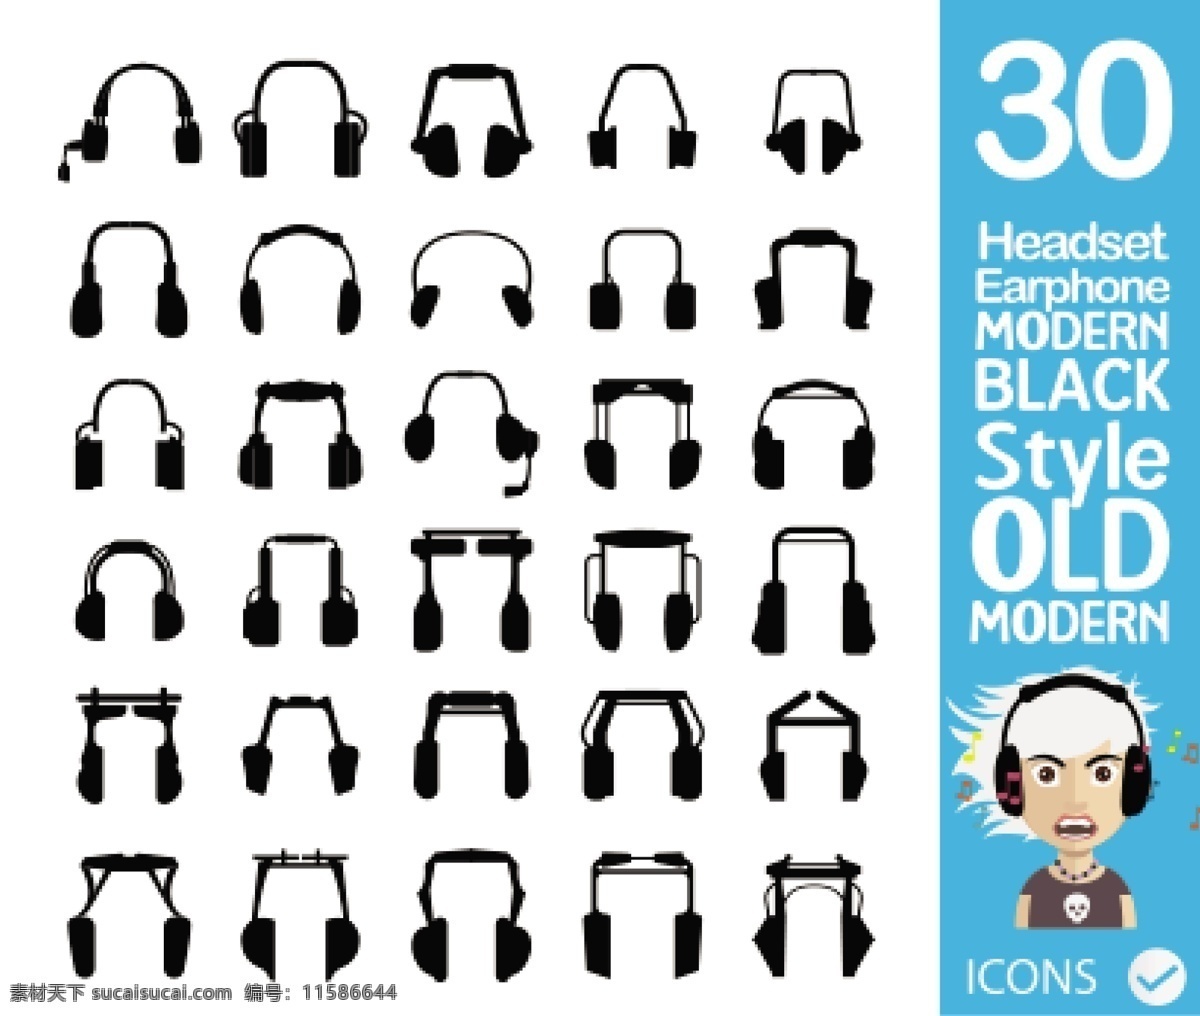 各种 黑色 耳机 插图 矢量 黑色耳机插图 矢量素材 音乐耳机 音乐元素 音乐插图 音乐图标 头戴耳机